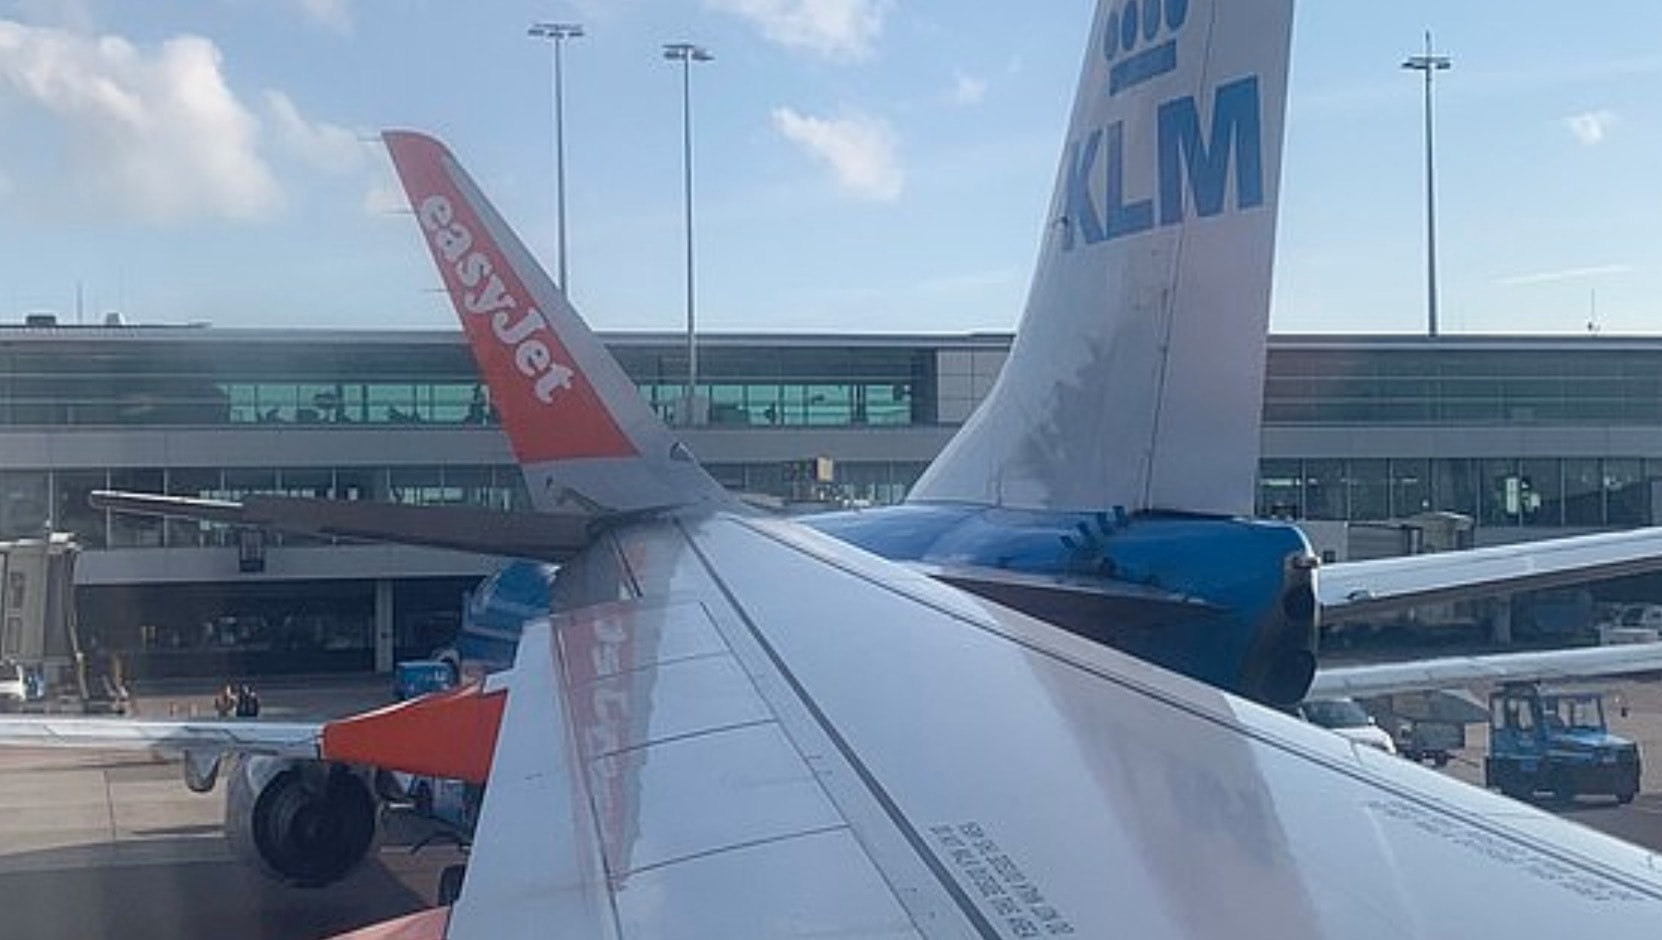 Amsterdam, aereo EasyJet finisce contro uno KLM sulla pista dell'aeroporto di Schipol